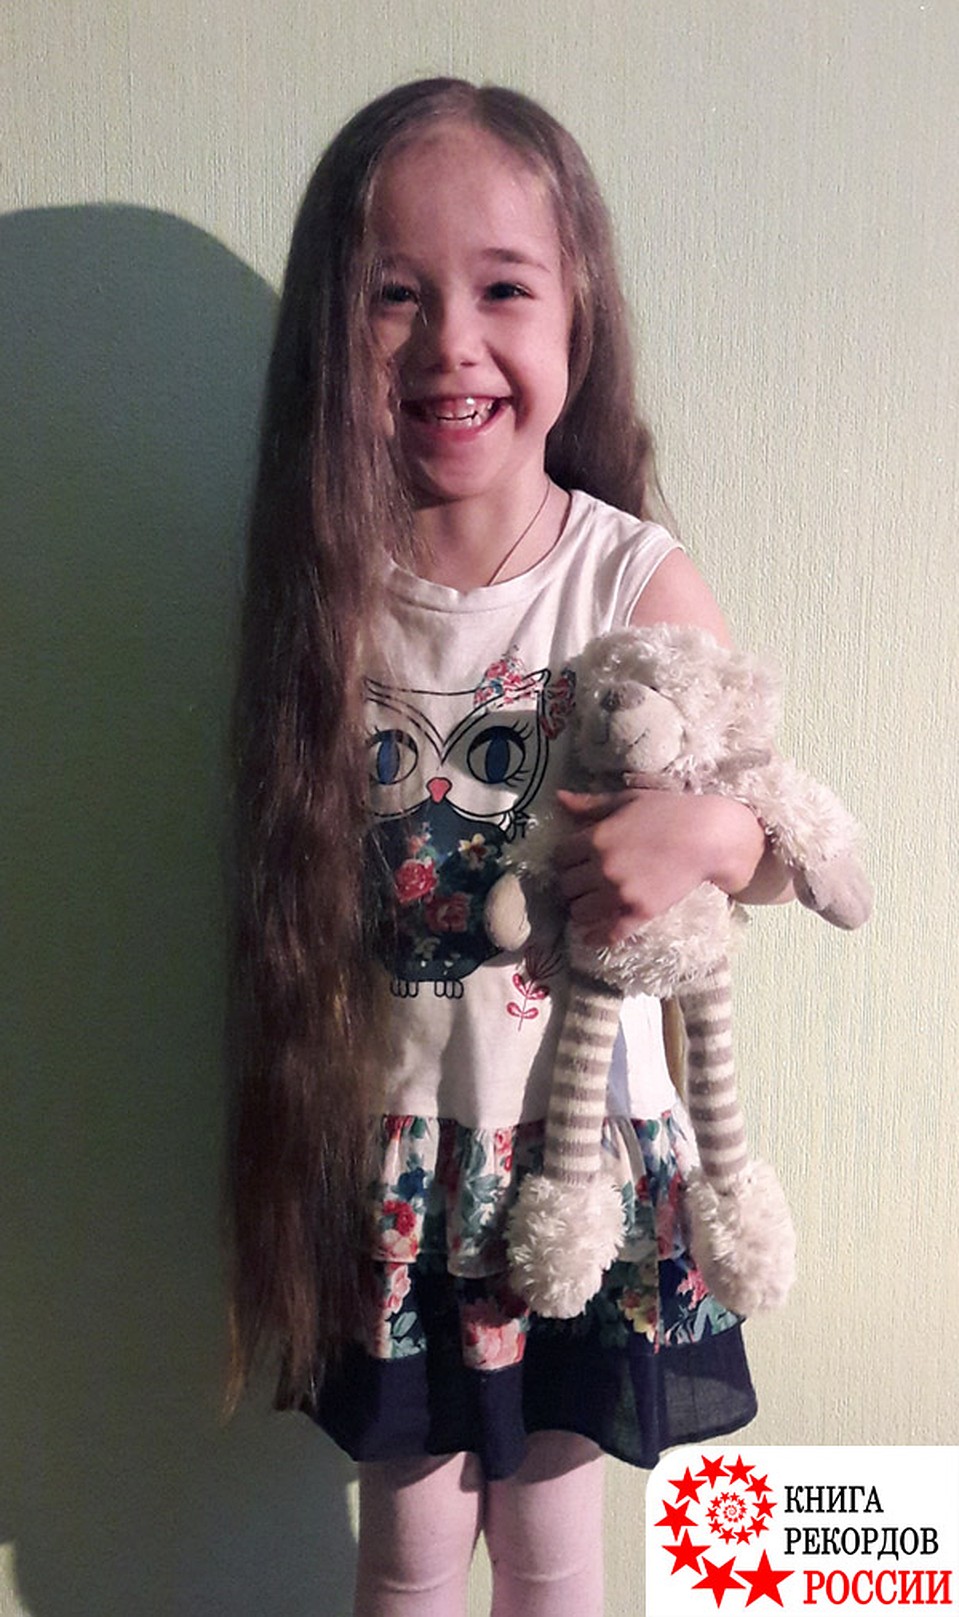 5-летняя девочка из Иркутска попала в Книгу рекордов России как обладательница самых длинных волос среди детей 